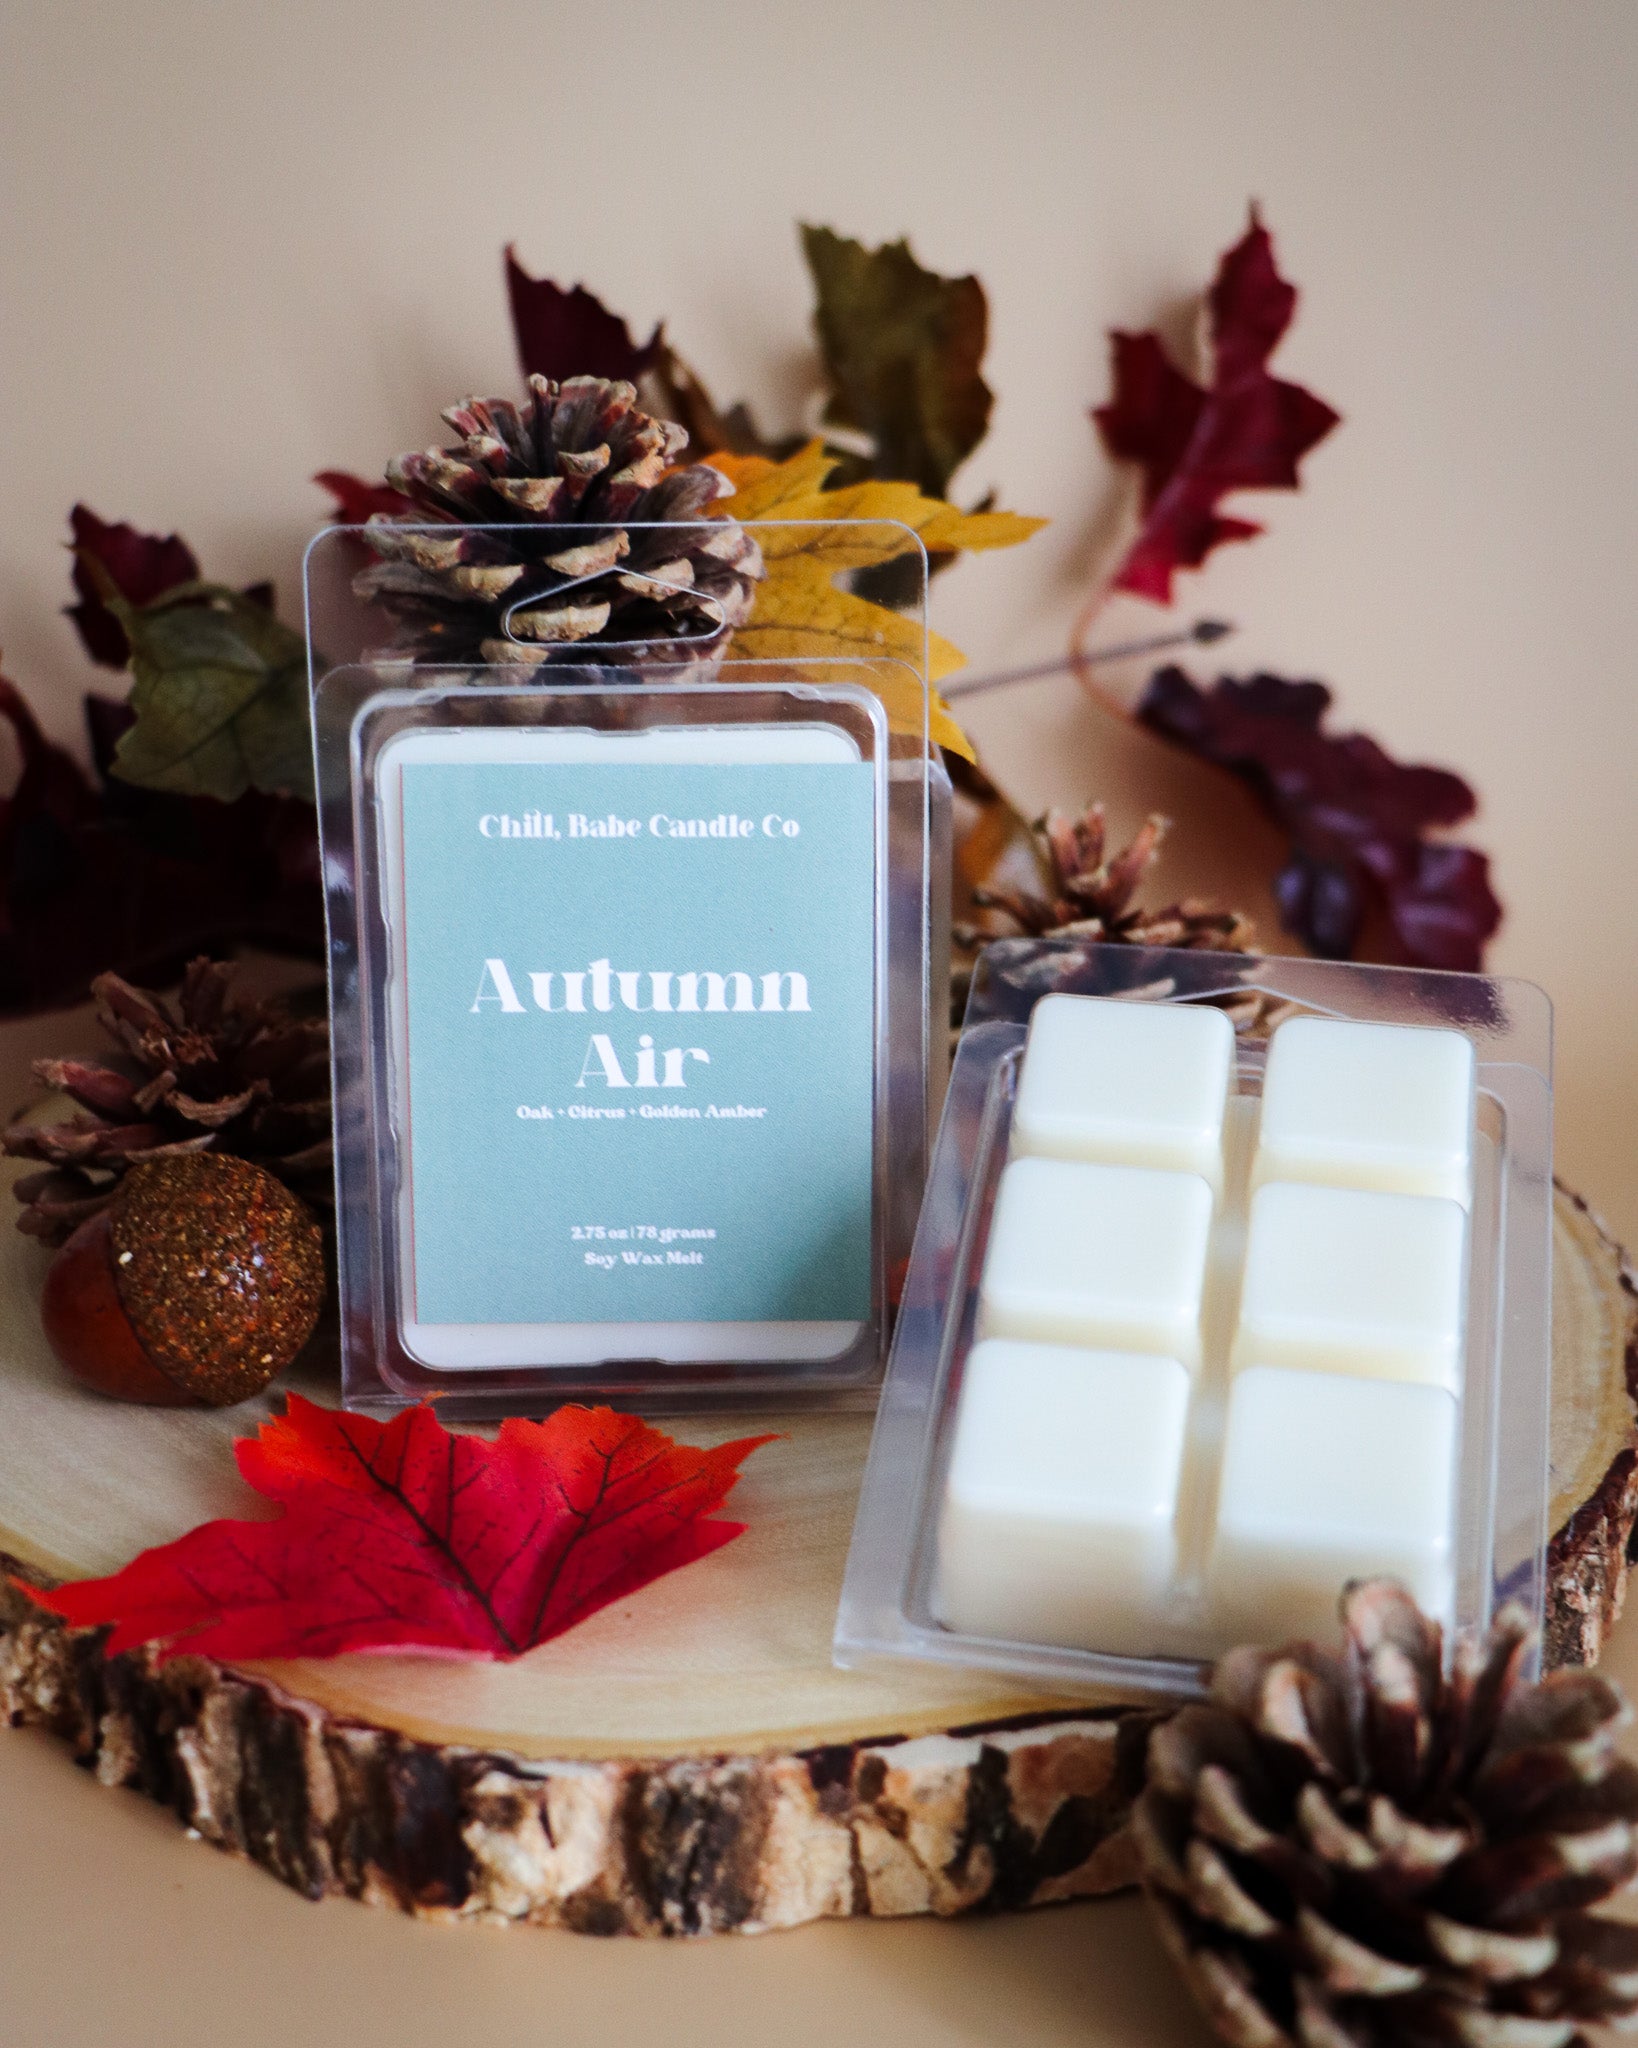 Autumn Air Wax Melt | Oak + Citrus + Golden Amber